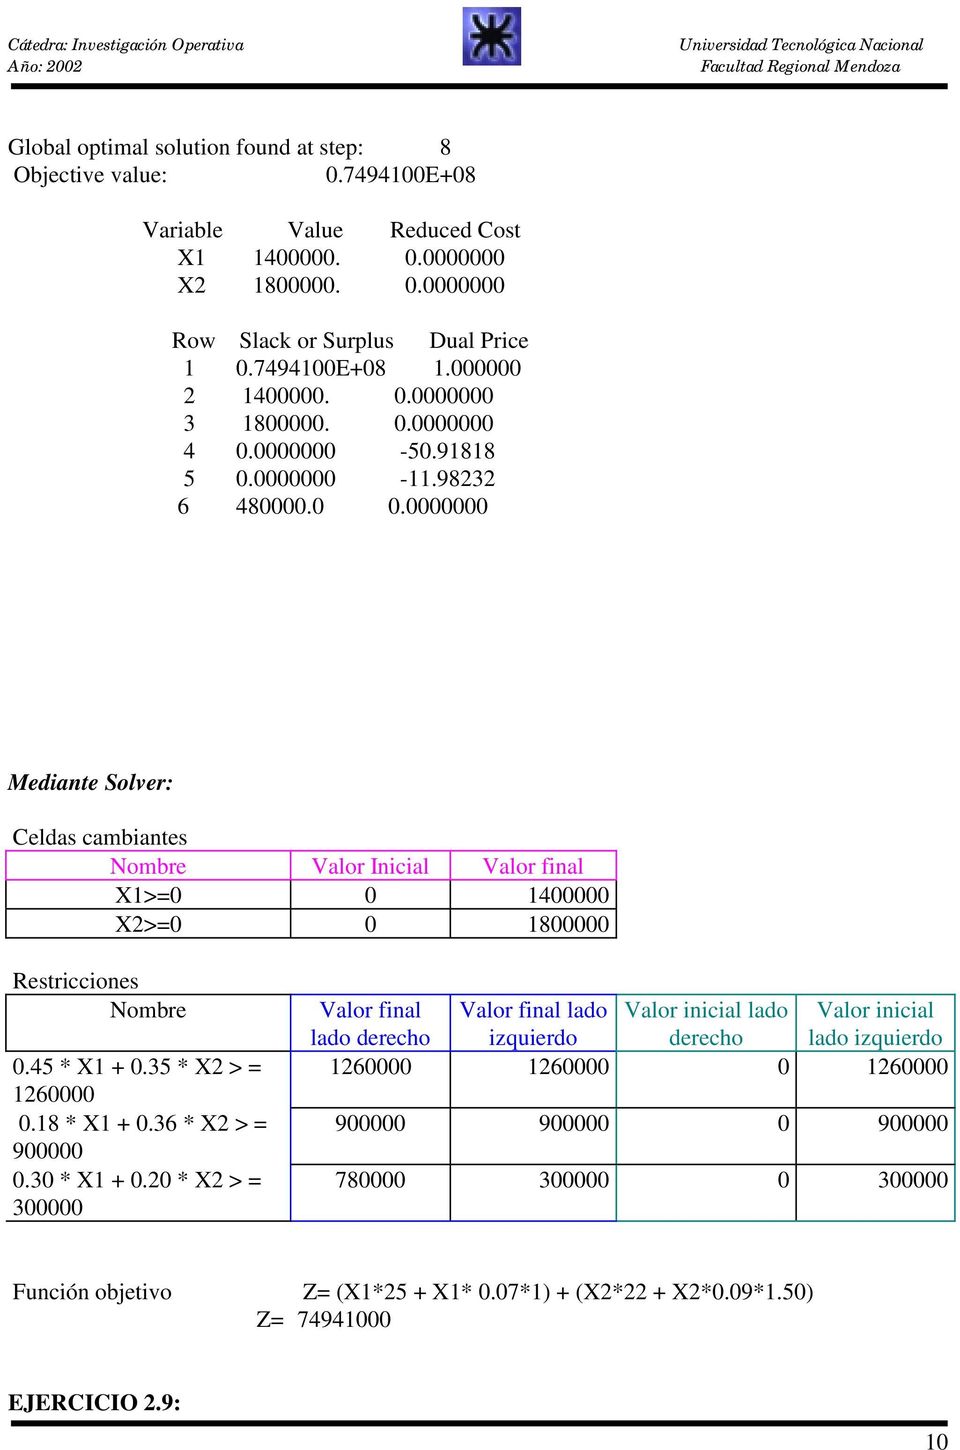 0000000 Mediante Solver: Celdas cambiantes Nombre Valor Inicial Valor final X1>=0 0 1400000 X2>=0 0 1800000 Restricciones Nombre 0.45 * X1 + 0.35 * X2 > = 1260000 0.18 * X1 + 0.36 * X2 > = 900000 0.